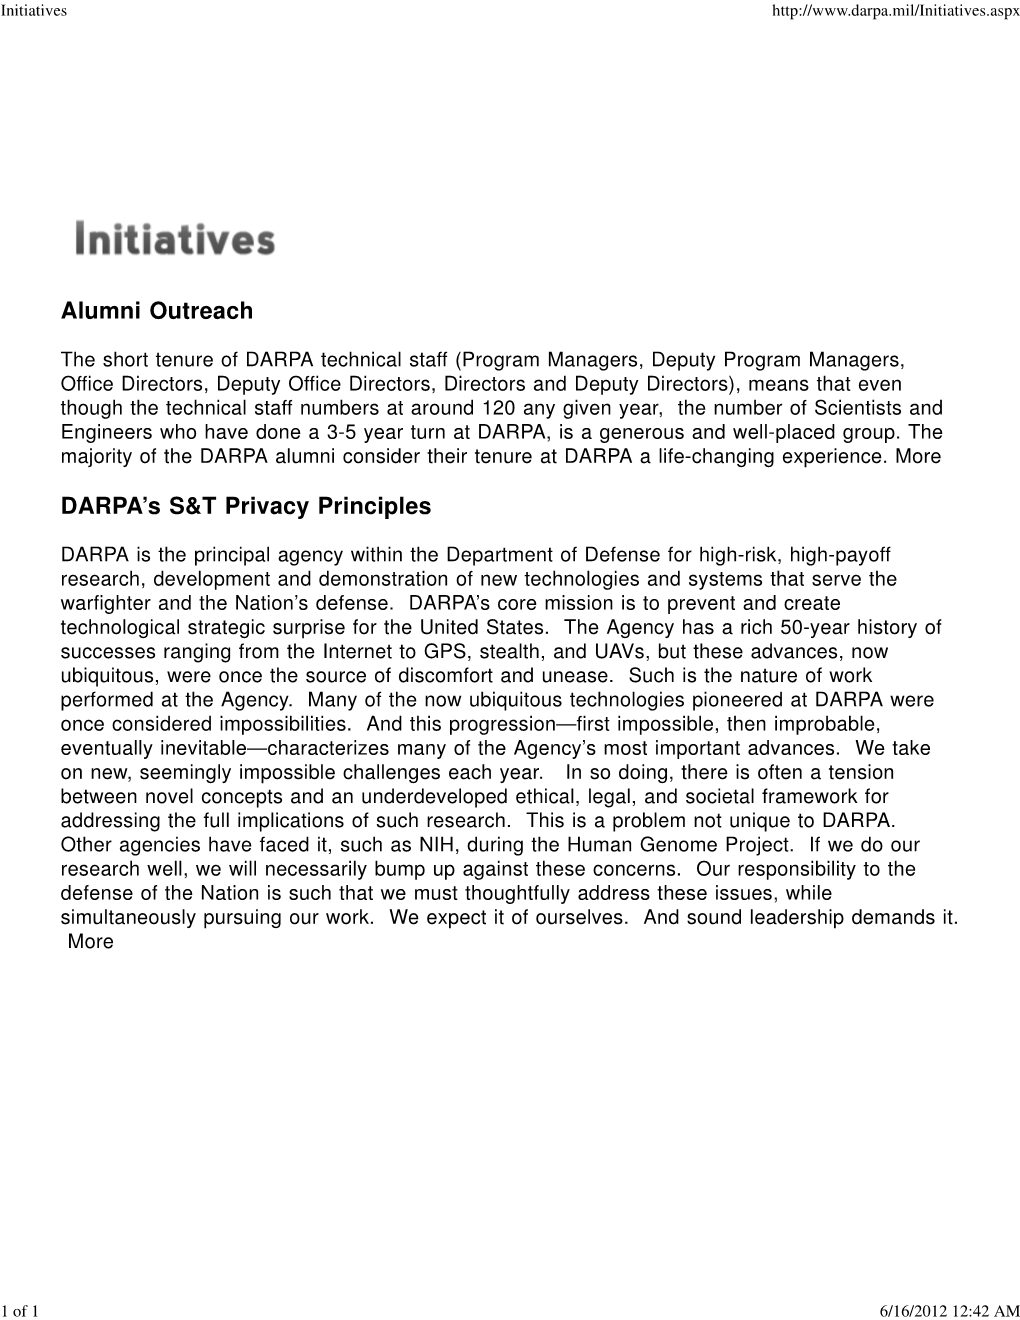 Alumni Outreach DARPA's S&T Privacy Principles